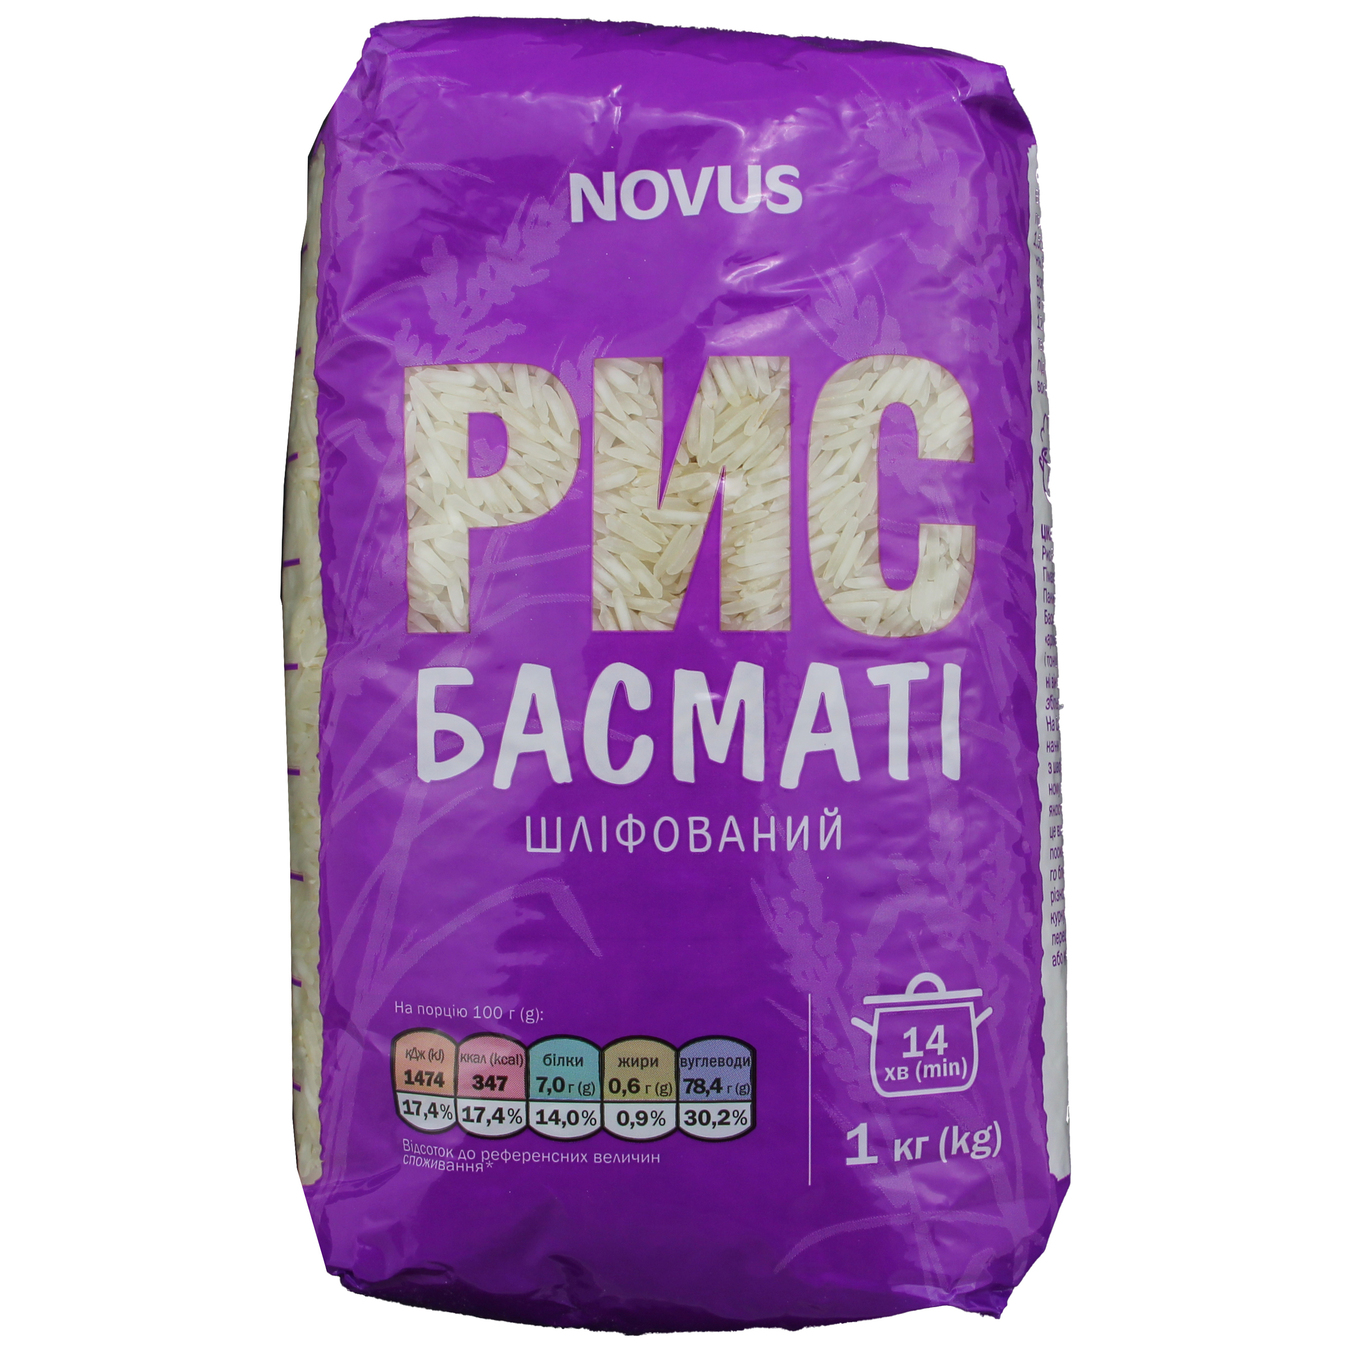 Novus Basmati Polished Rice 1kg